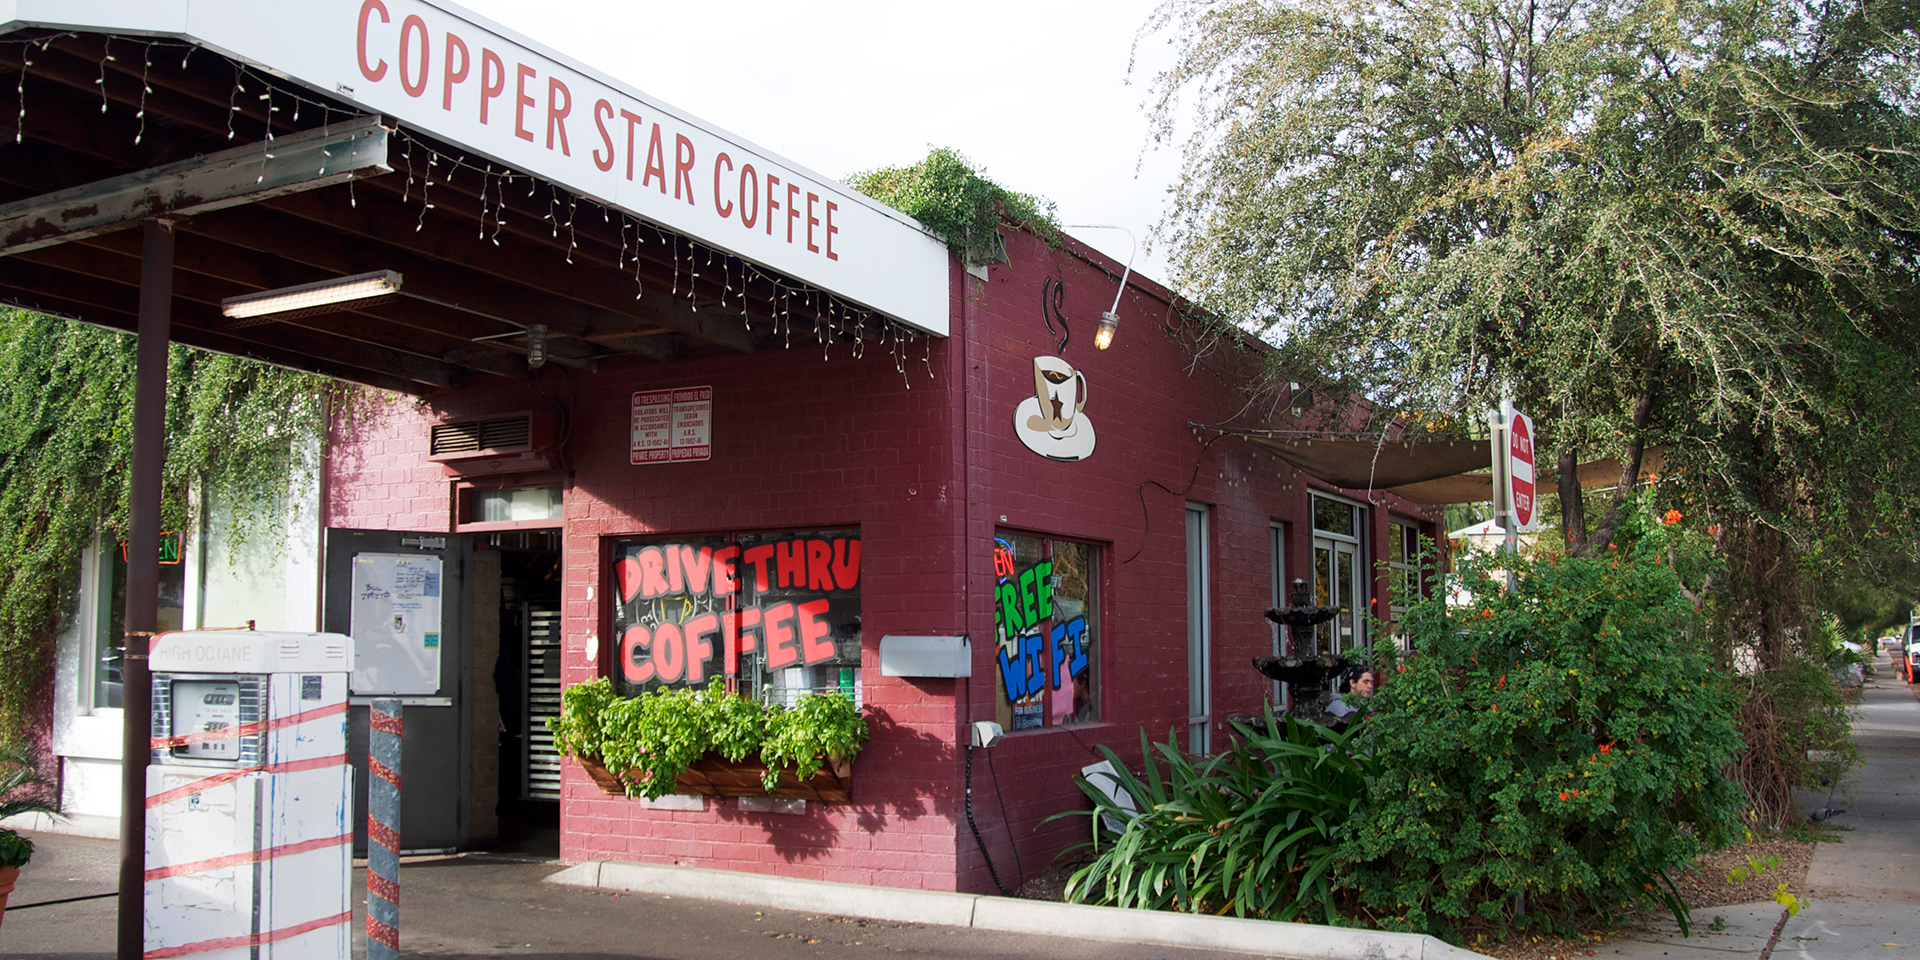 Drive thru del Cooper Star Coffee